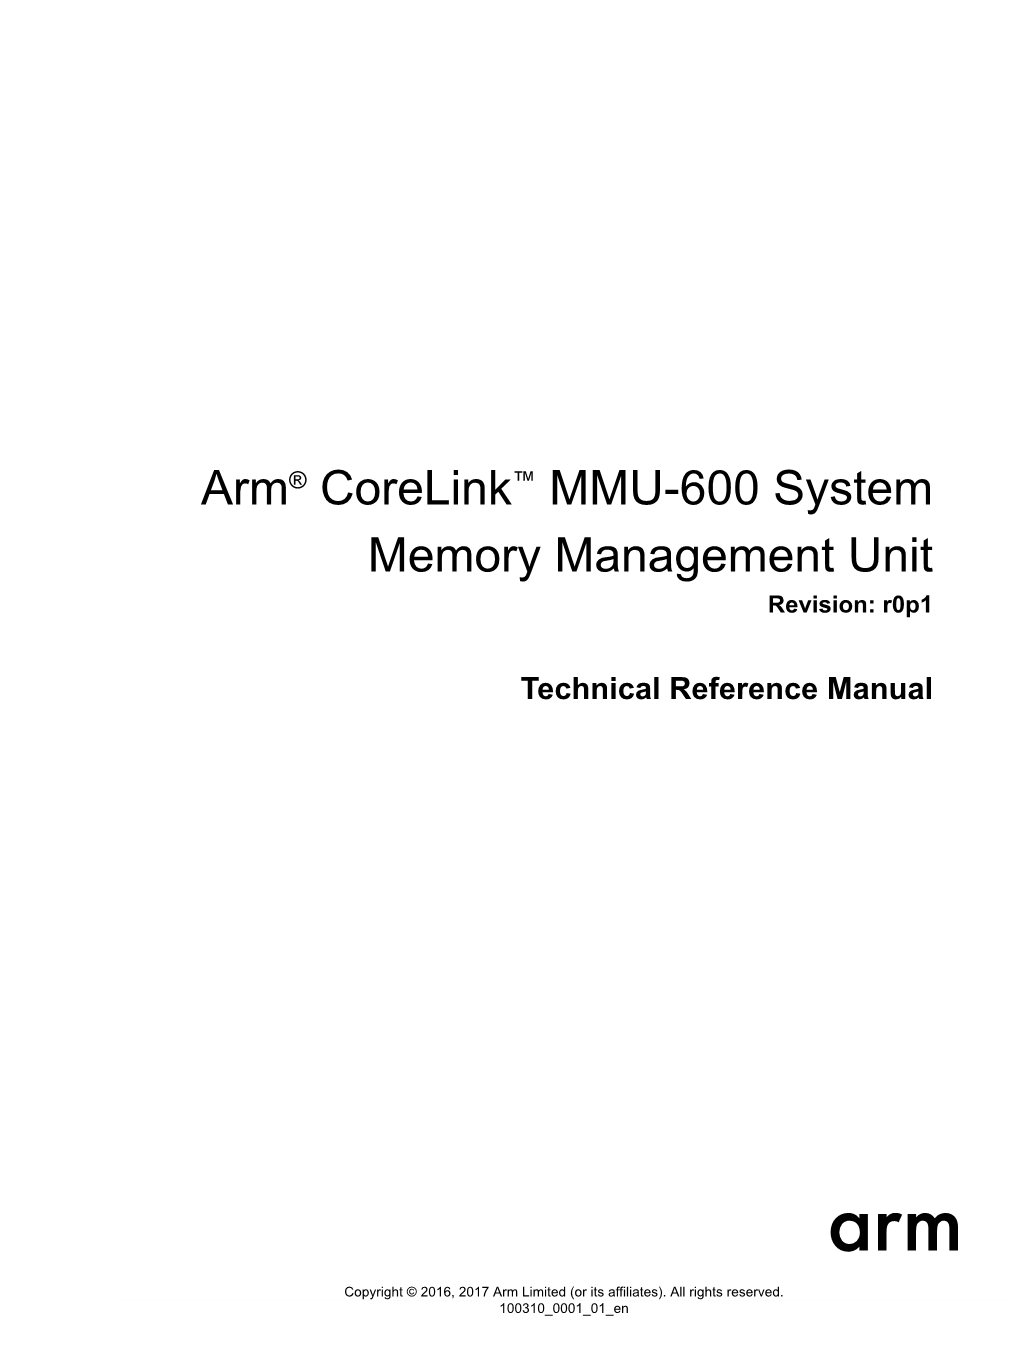 Arm® Corelink™ MMU-600 System Memory Management Unit Revision: R0p1